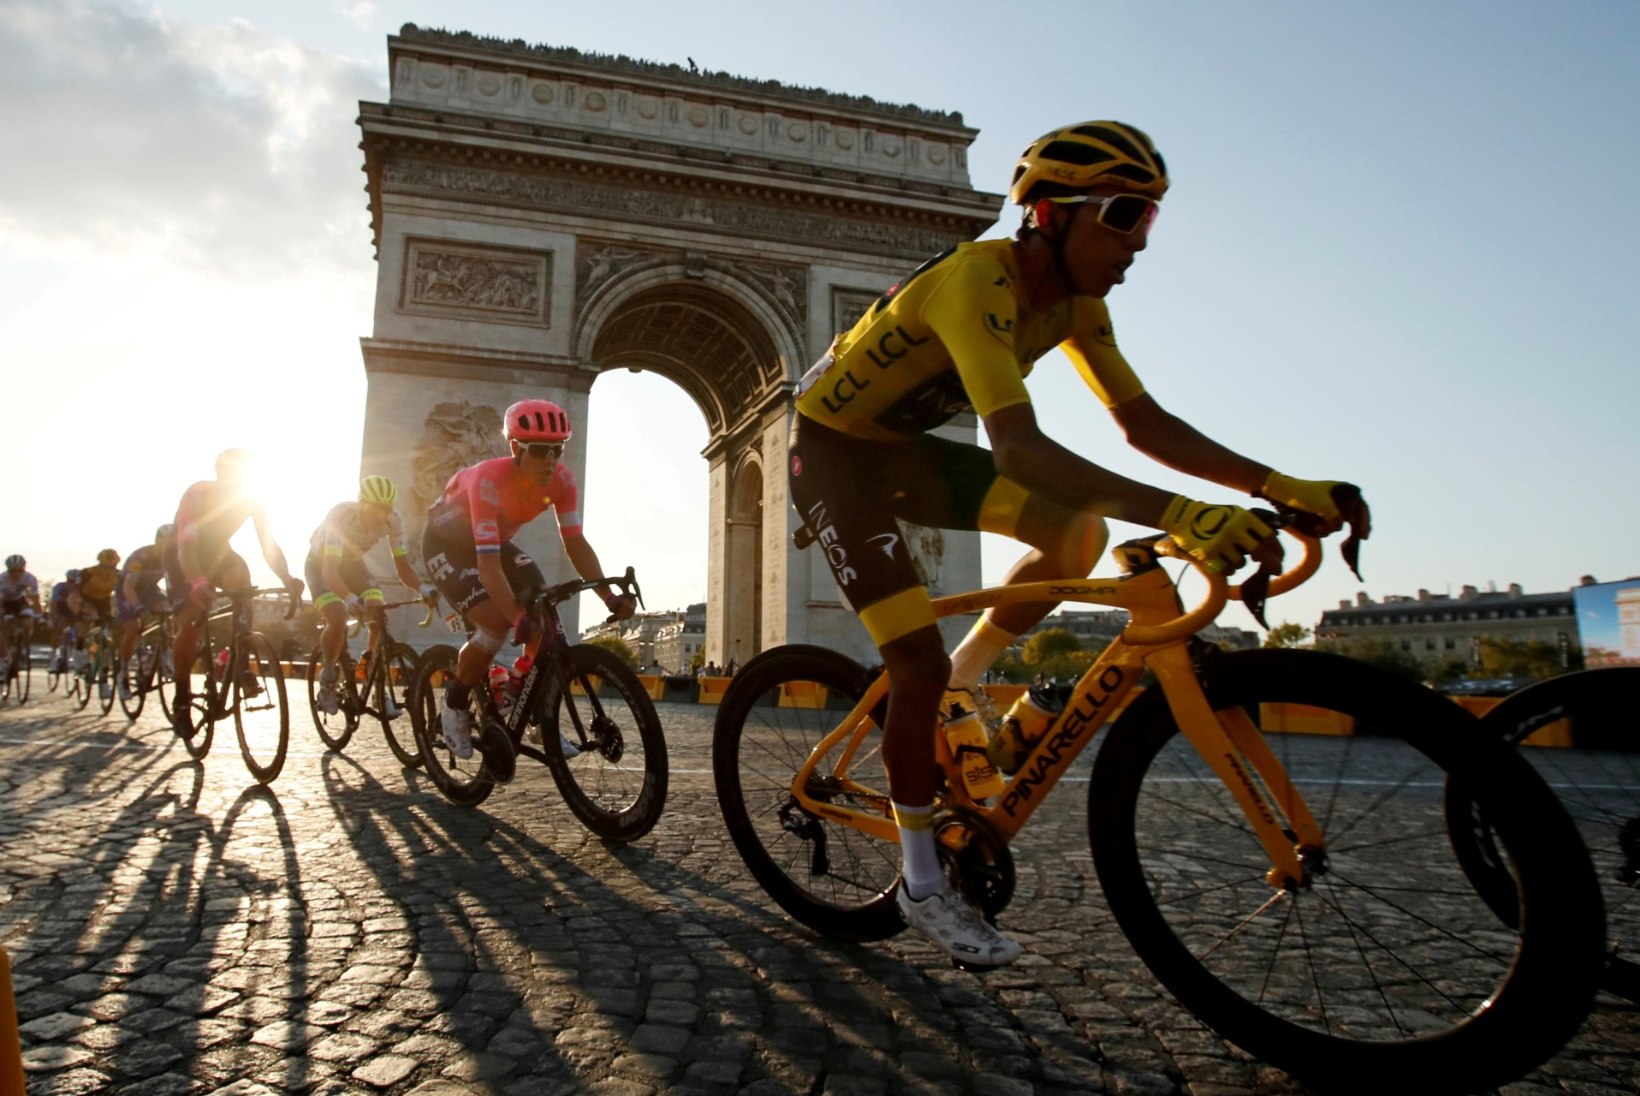 Rattaässad saavad pedaalida nii Tour de France'il kui ka olümpial 